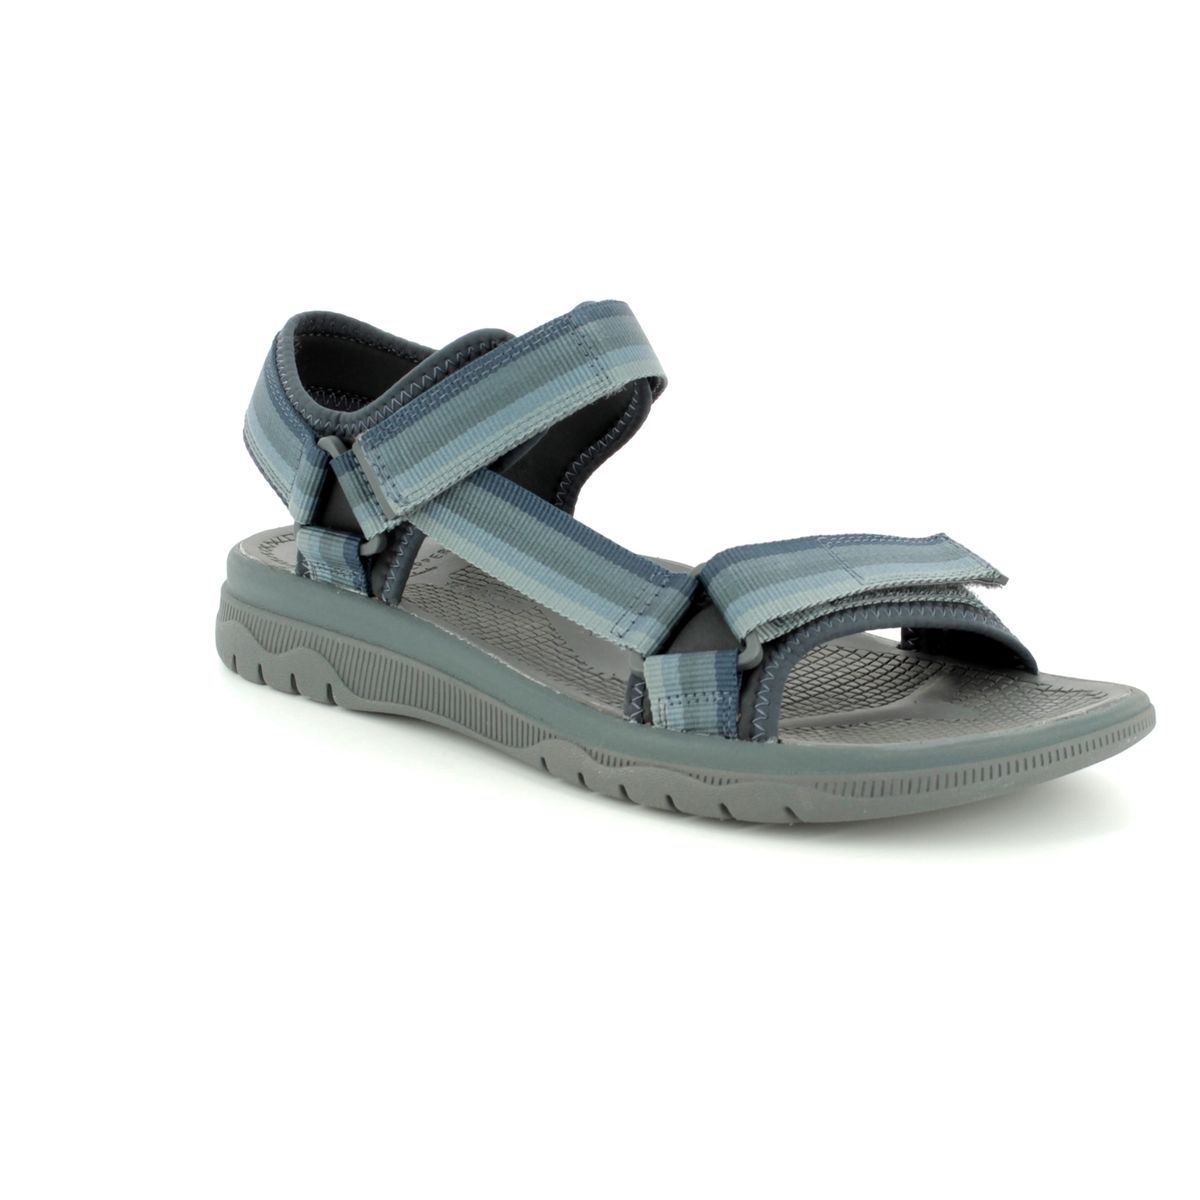 Clarks Balta Reef G Fit Grey sandals